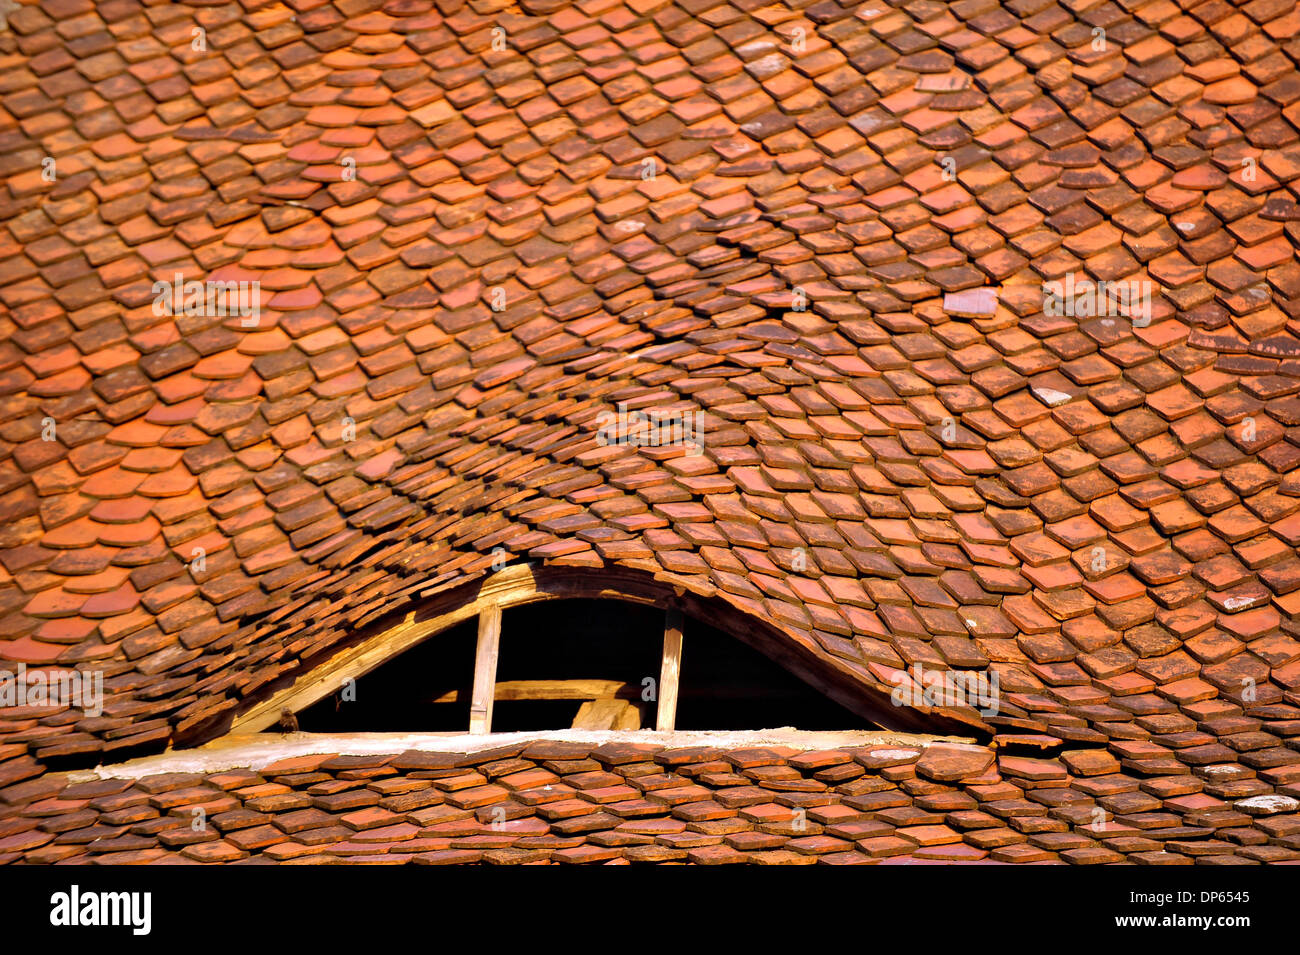 Detalle de la arquitectura con buhardilla ventana y teja vieja Foto de stock